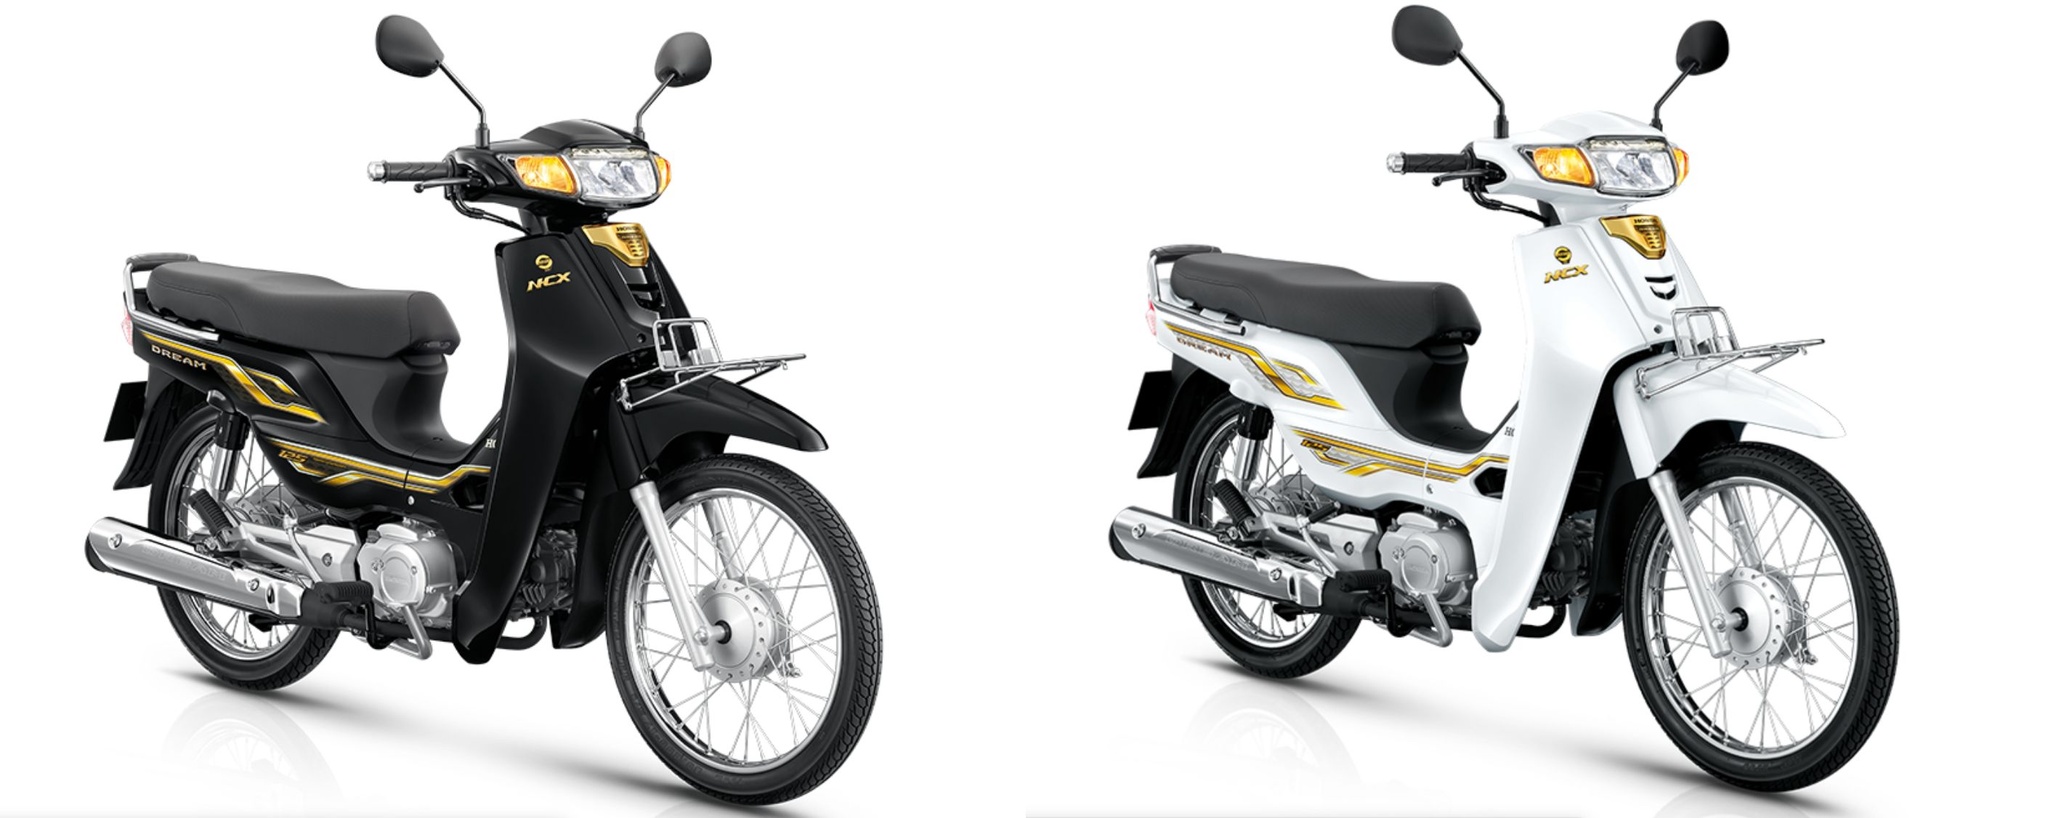 Honda Dream 125 rục rịch gia nhập thị trường Việt Nam - ảnh 3